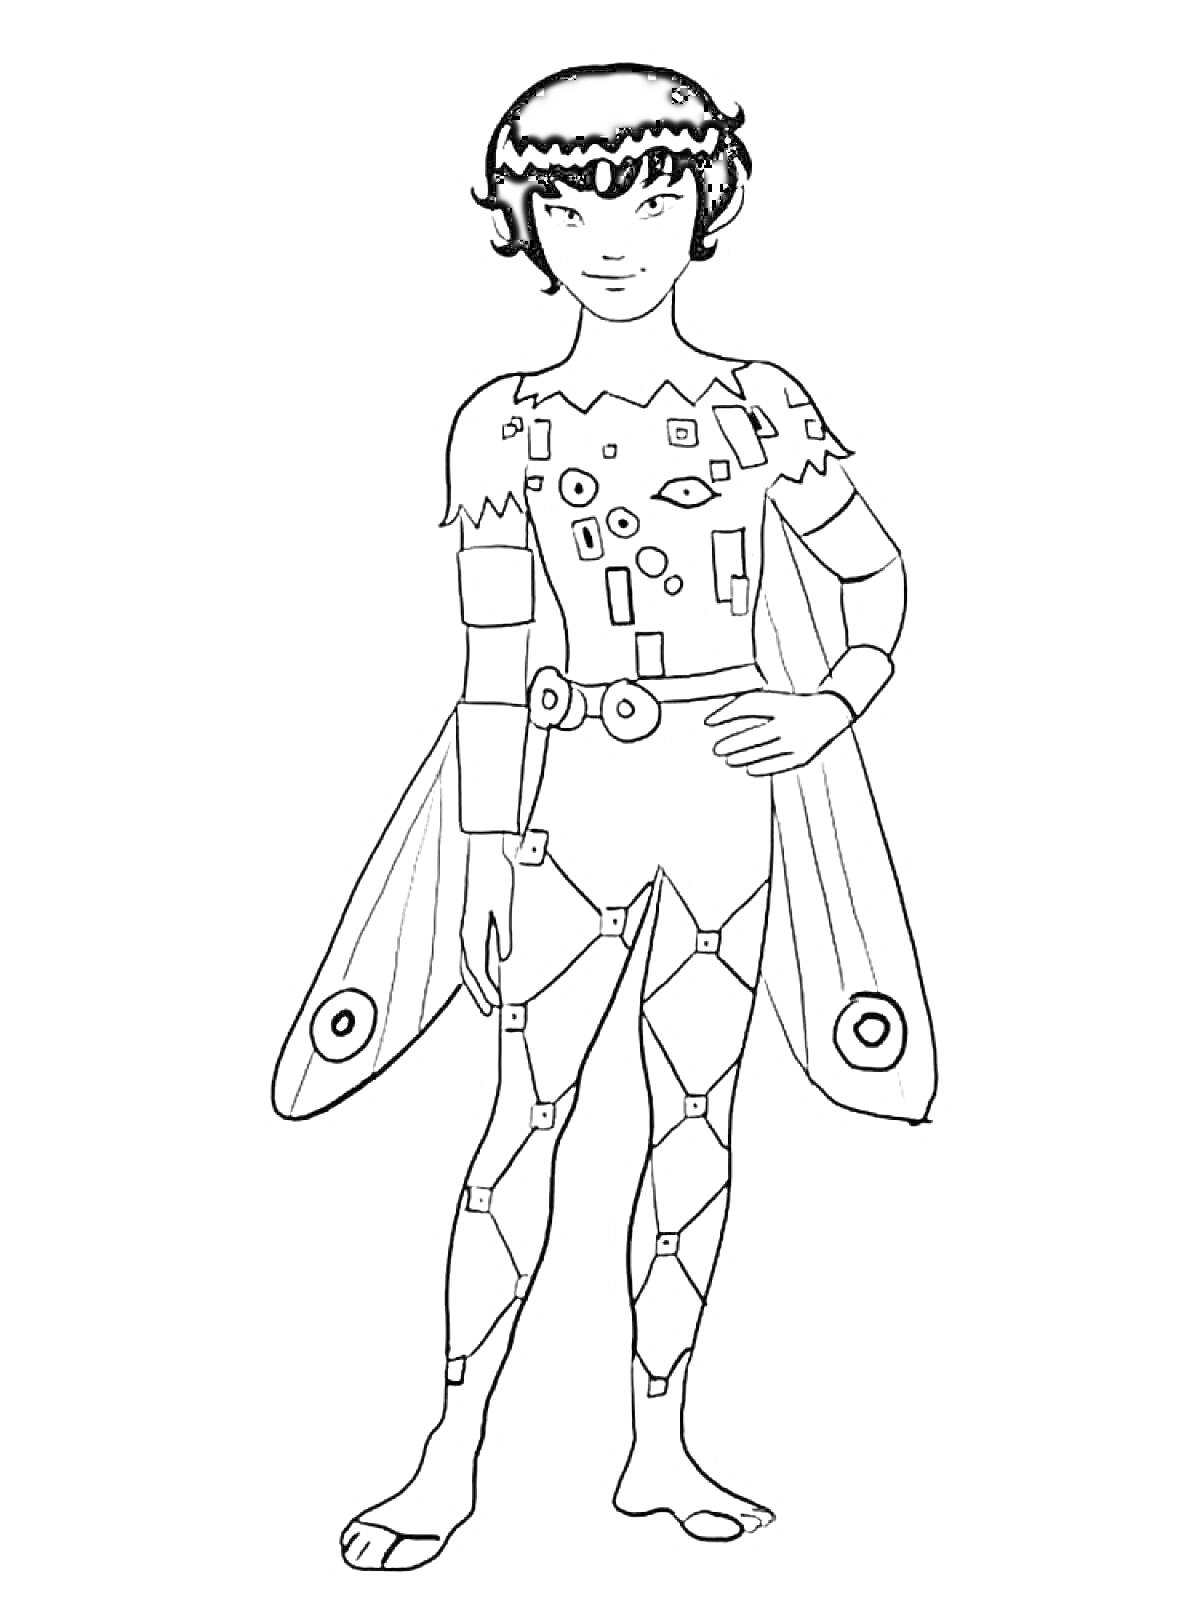 Раскраска Фея с короткими волосами, крыльями и нарядом из геометрических фигур